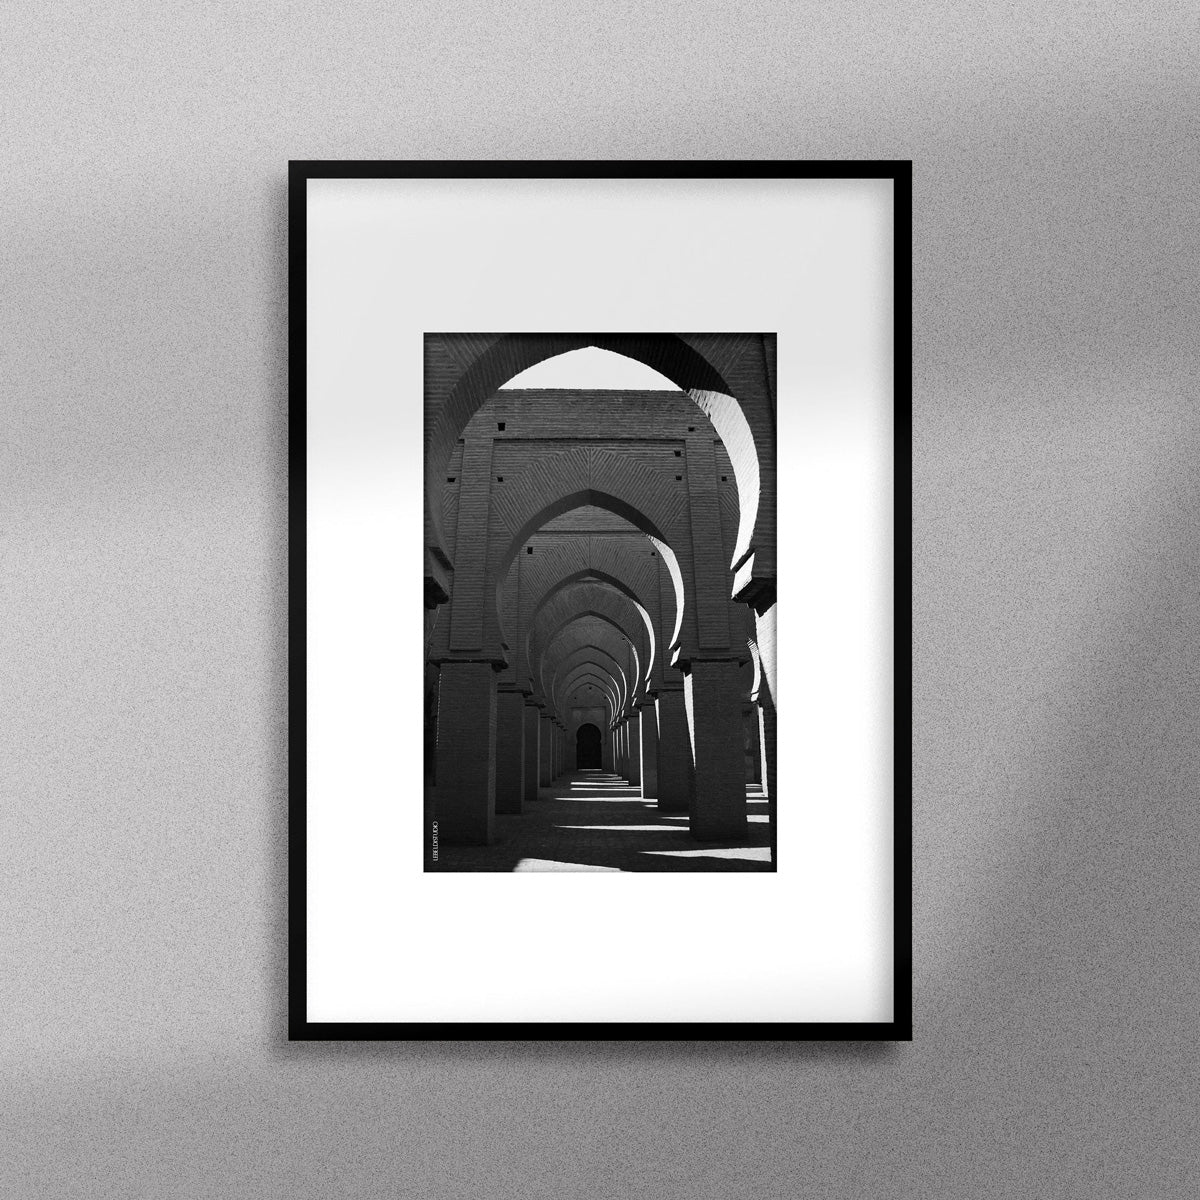 Tableau décoratif en noir et blanc de la Mosquée Tinmel, encadré dans un cadre noir - Format A4.